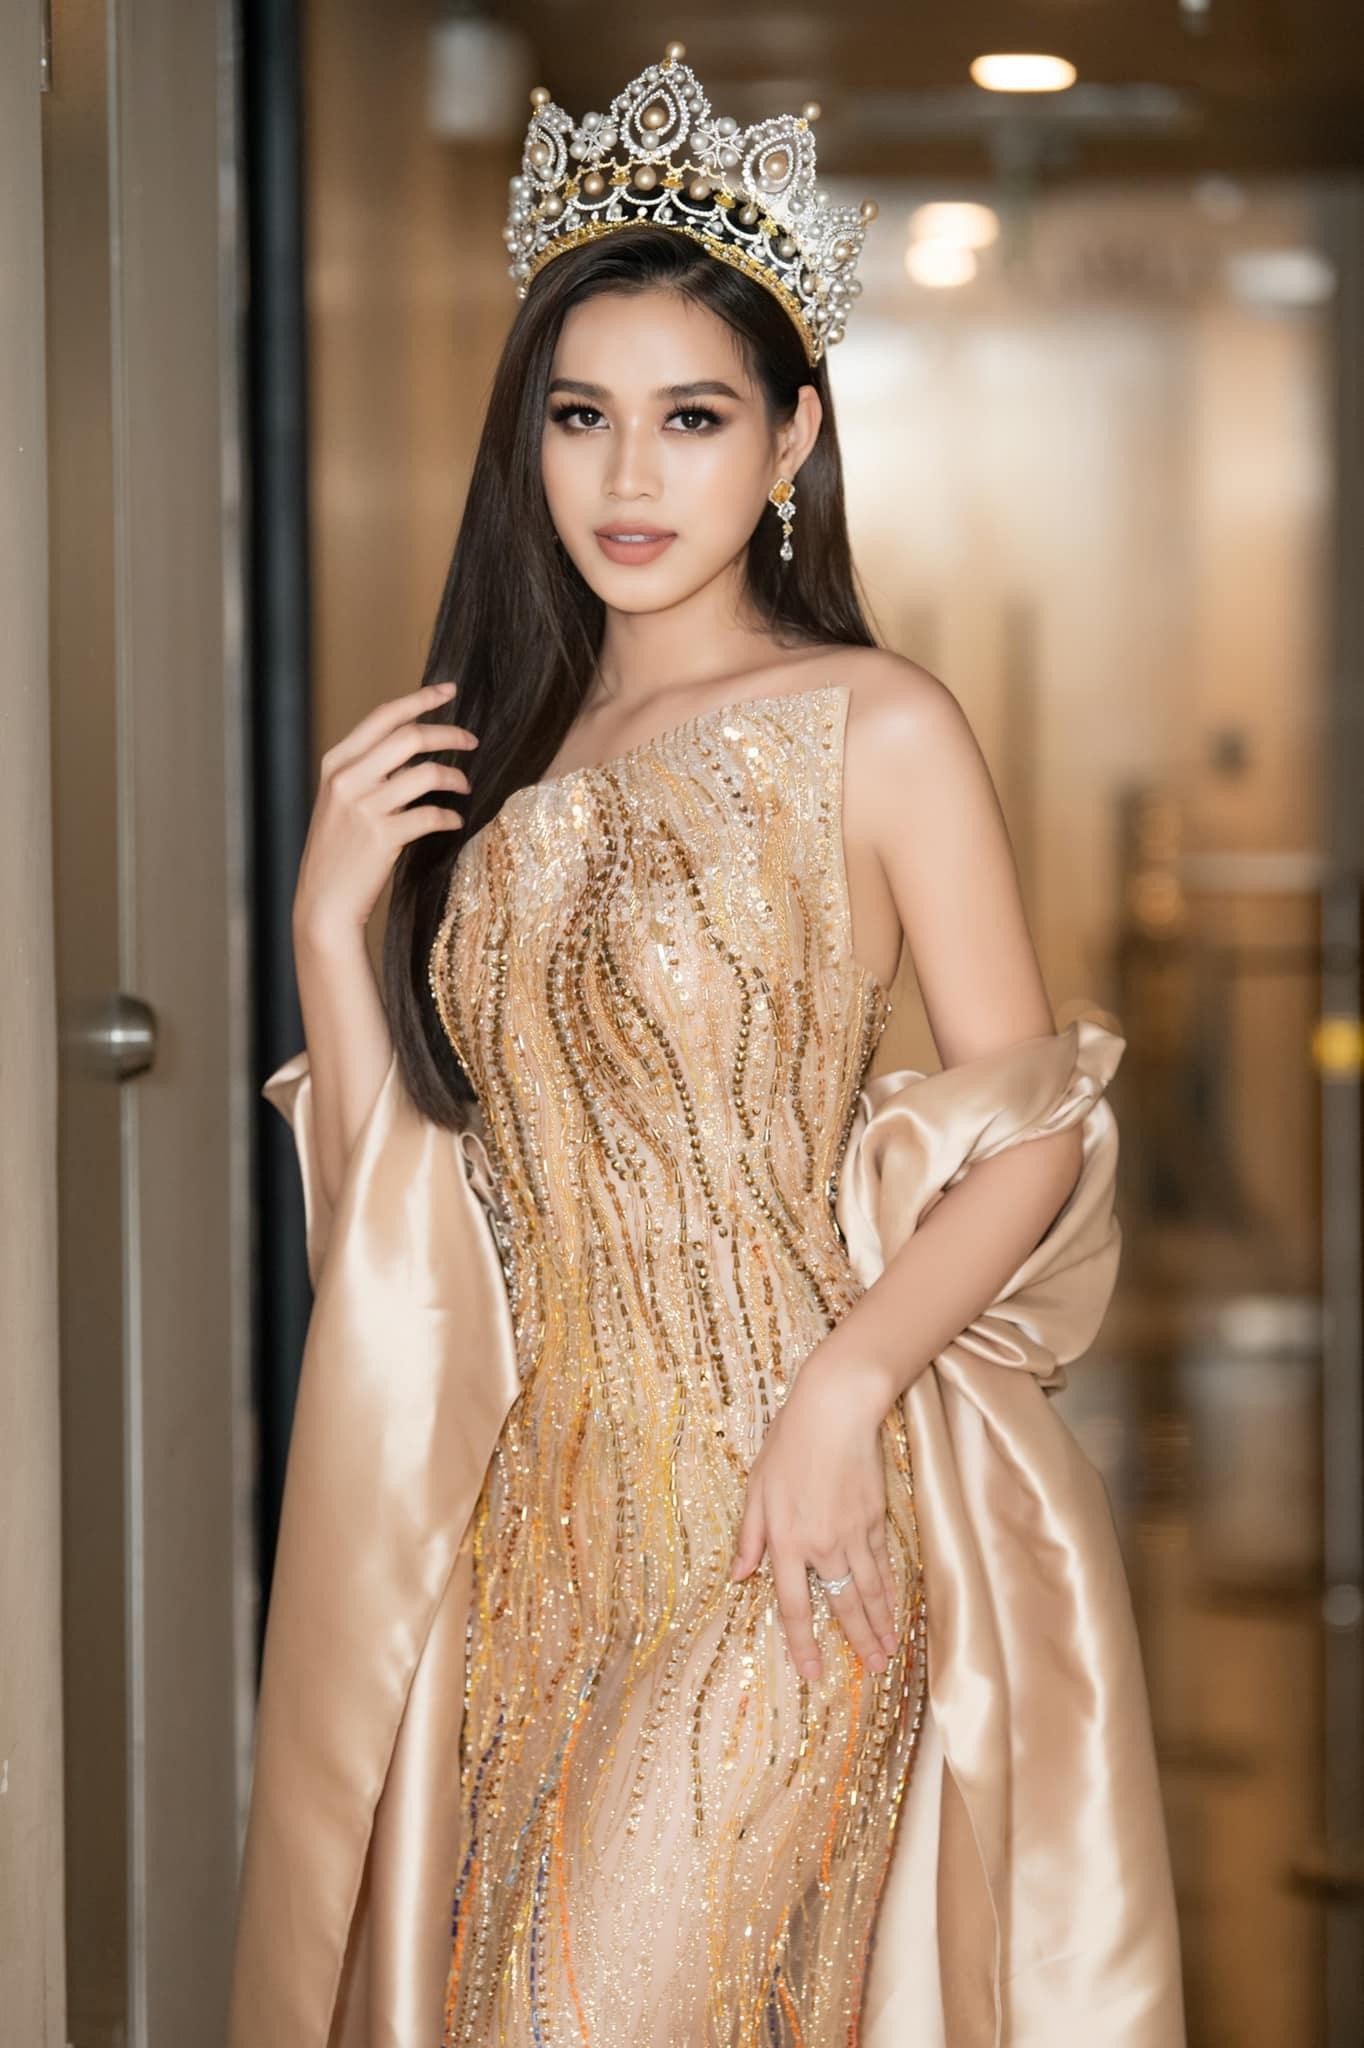 Đỗ Thị Hà diện váy vàng gold đẹp tựa 'nữ thần', Á hậu Phương Anh mặc váy cut-out táo bạo - Ảnh 2.